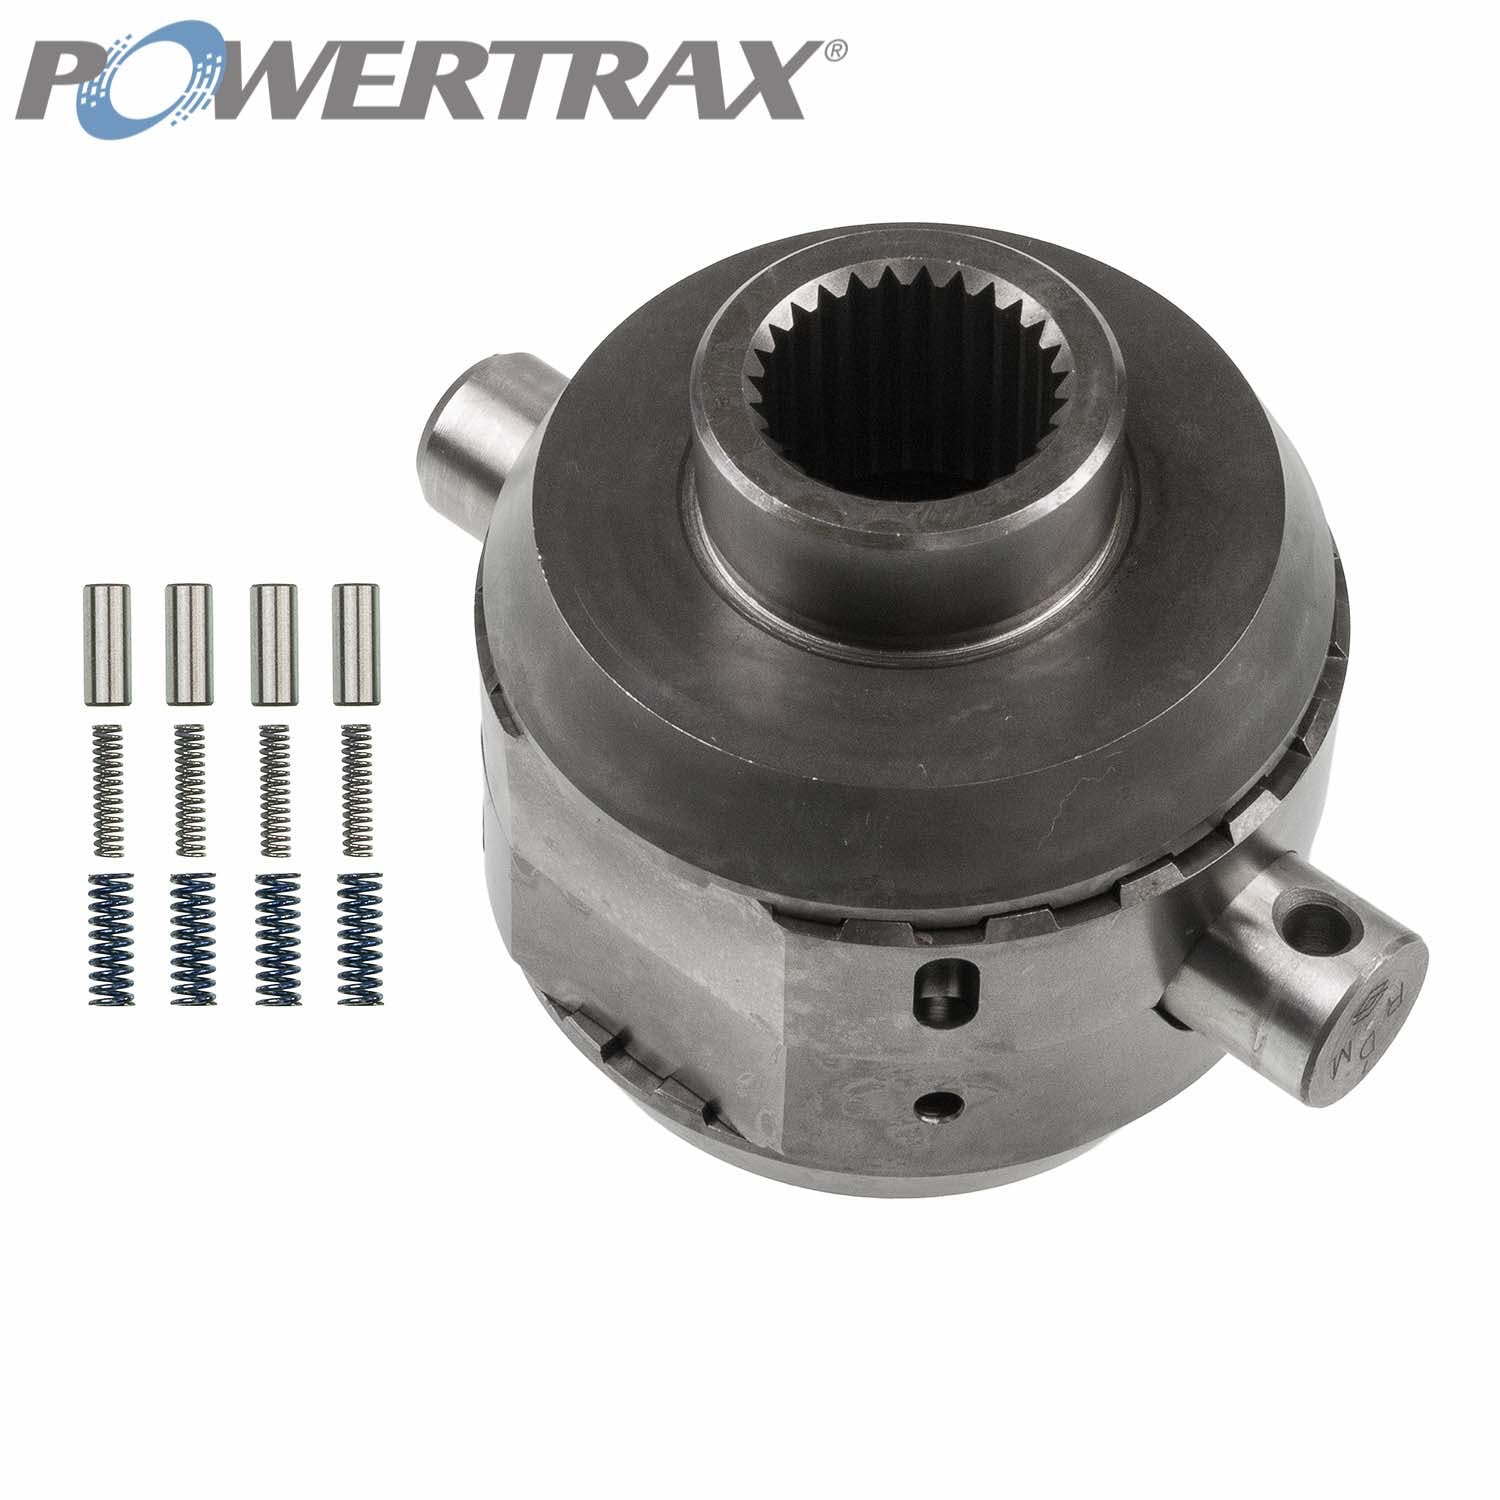 PowerTrax 1230-LR Lock Right Locker